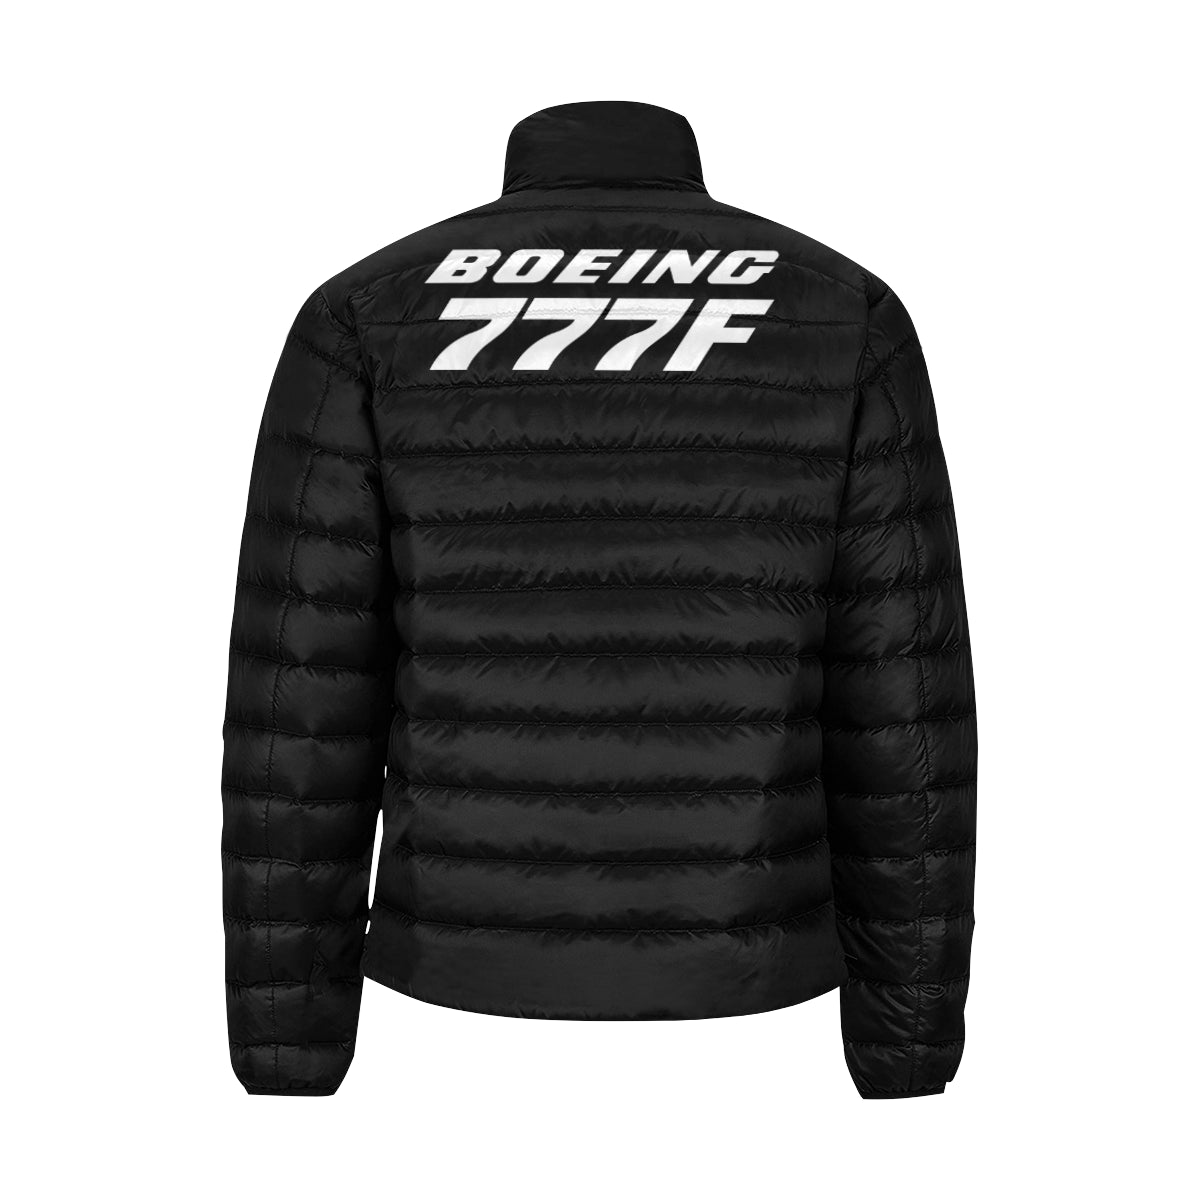 BOEING 777F Men's Stand Collar Padded Jacket e-joyer